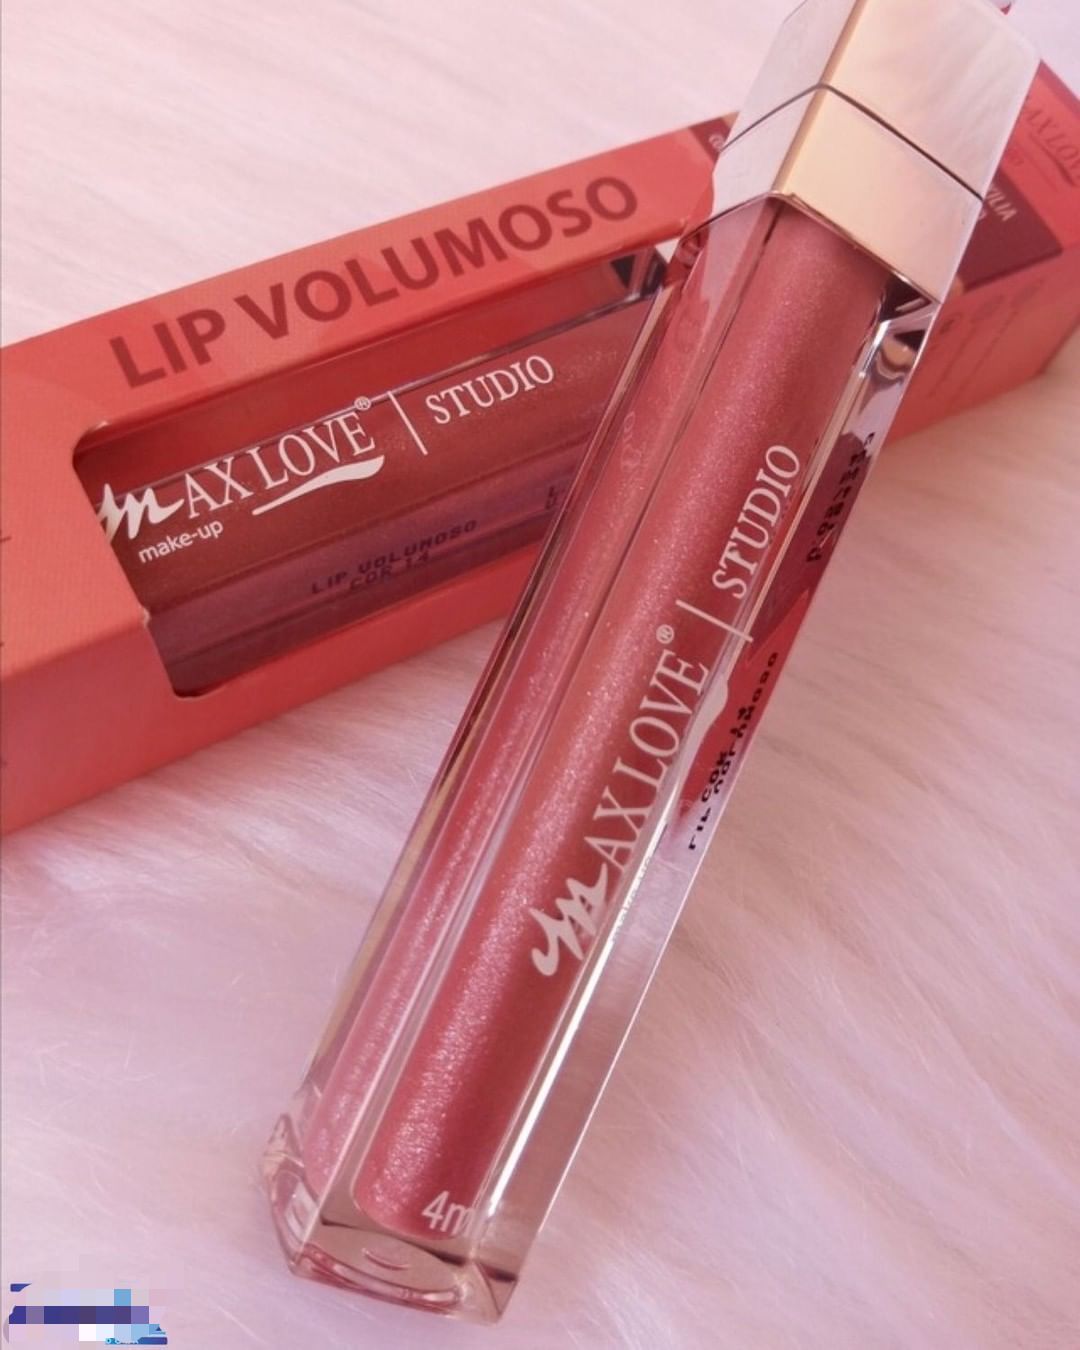 Lip volumoso max love 14